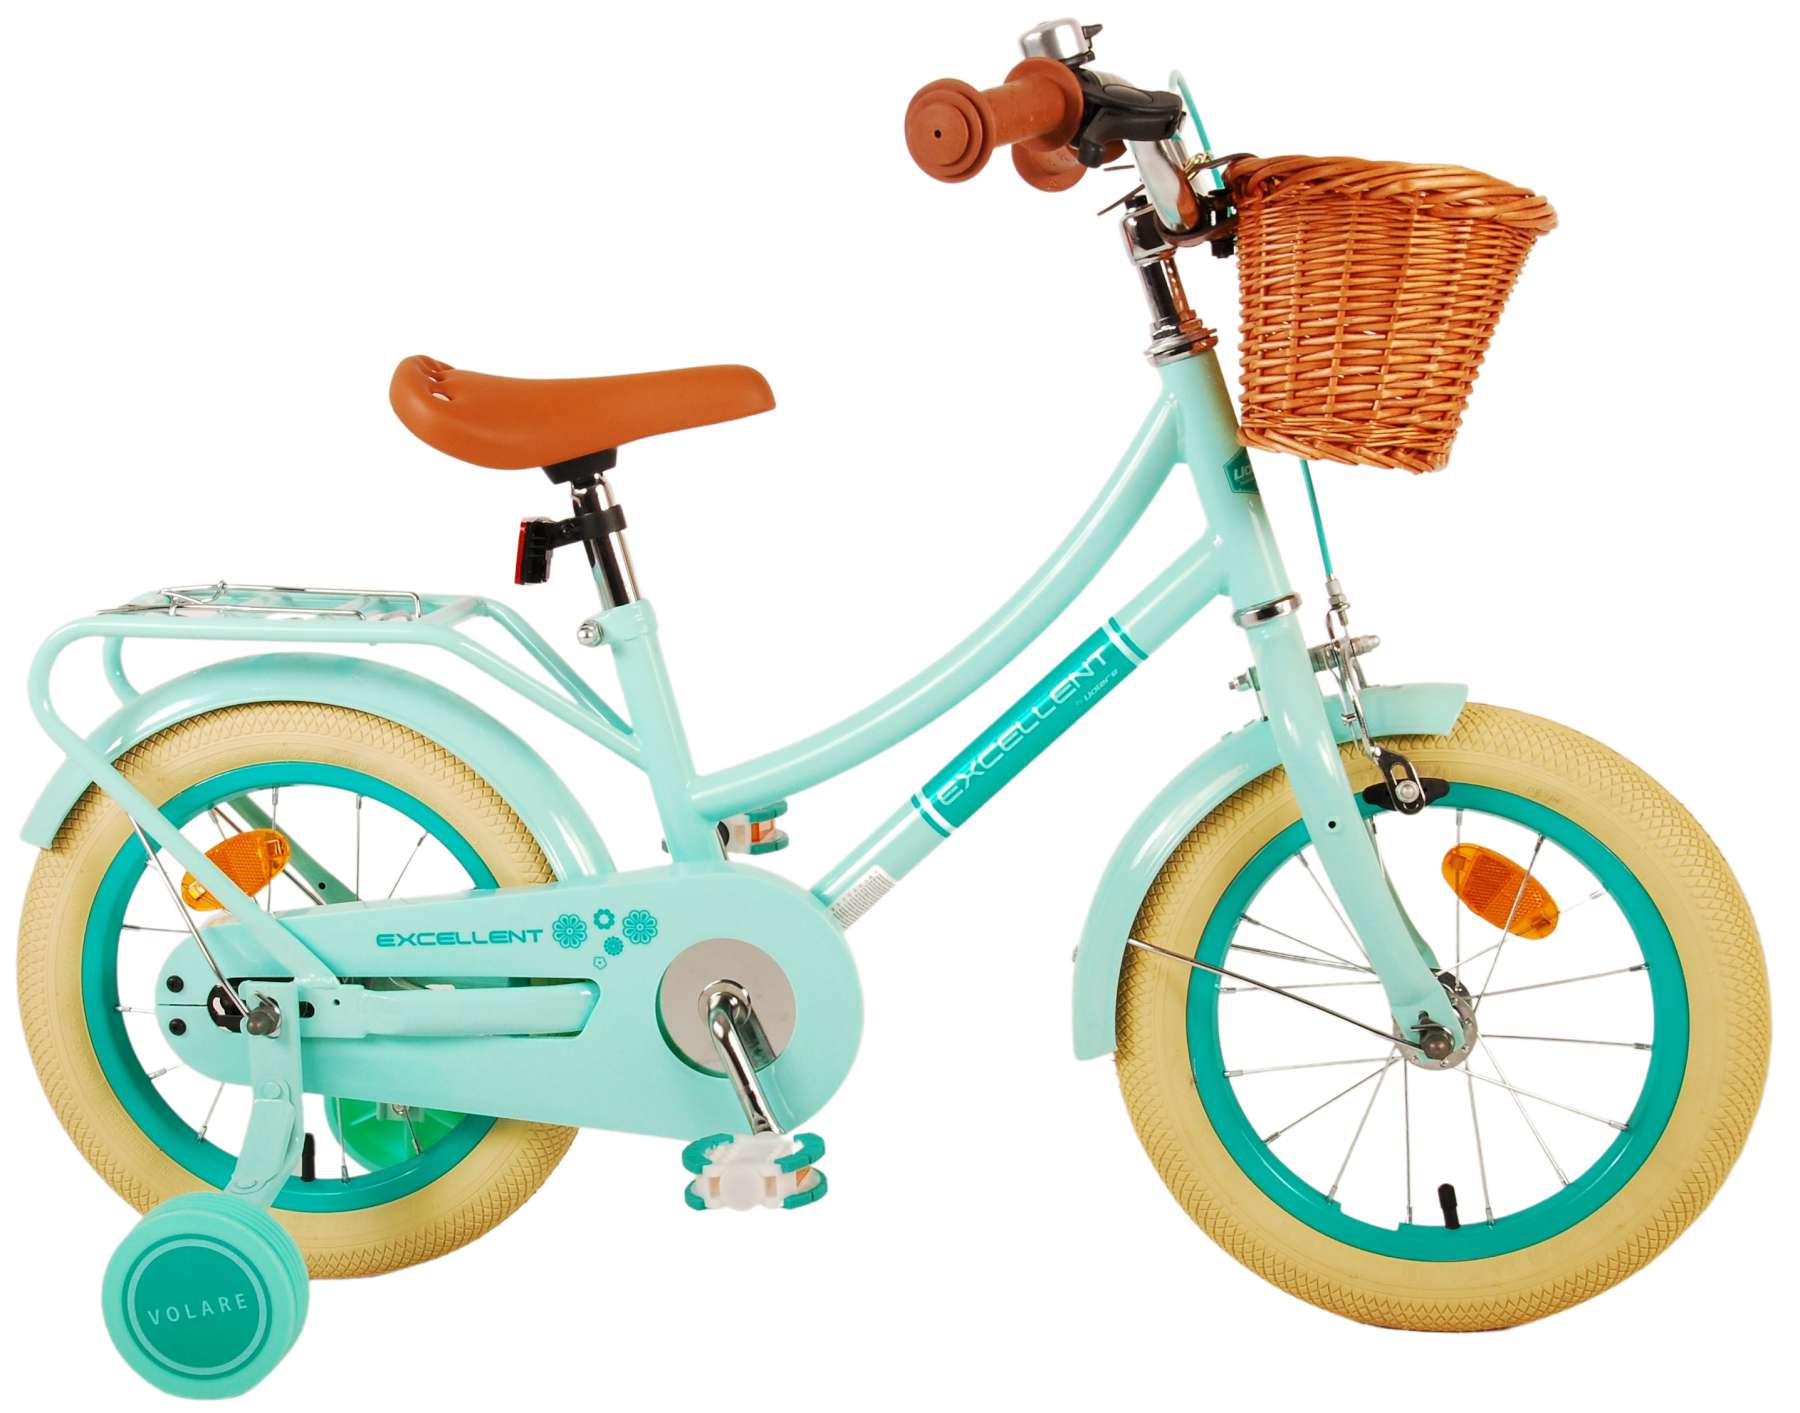 Kinderfahrrad Excellent für Mädchen 14 Zoll Kinderrad in Grün Fahrrad